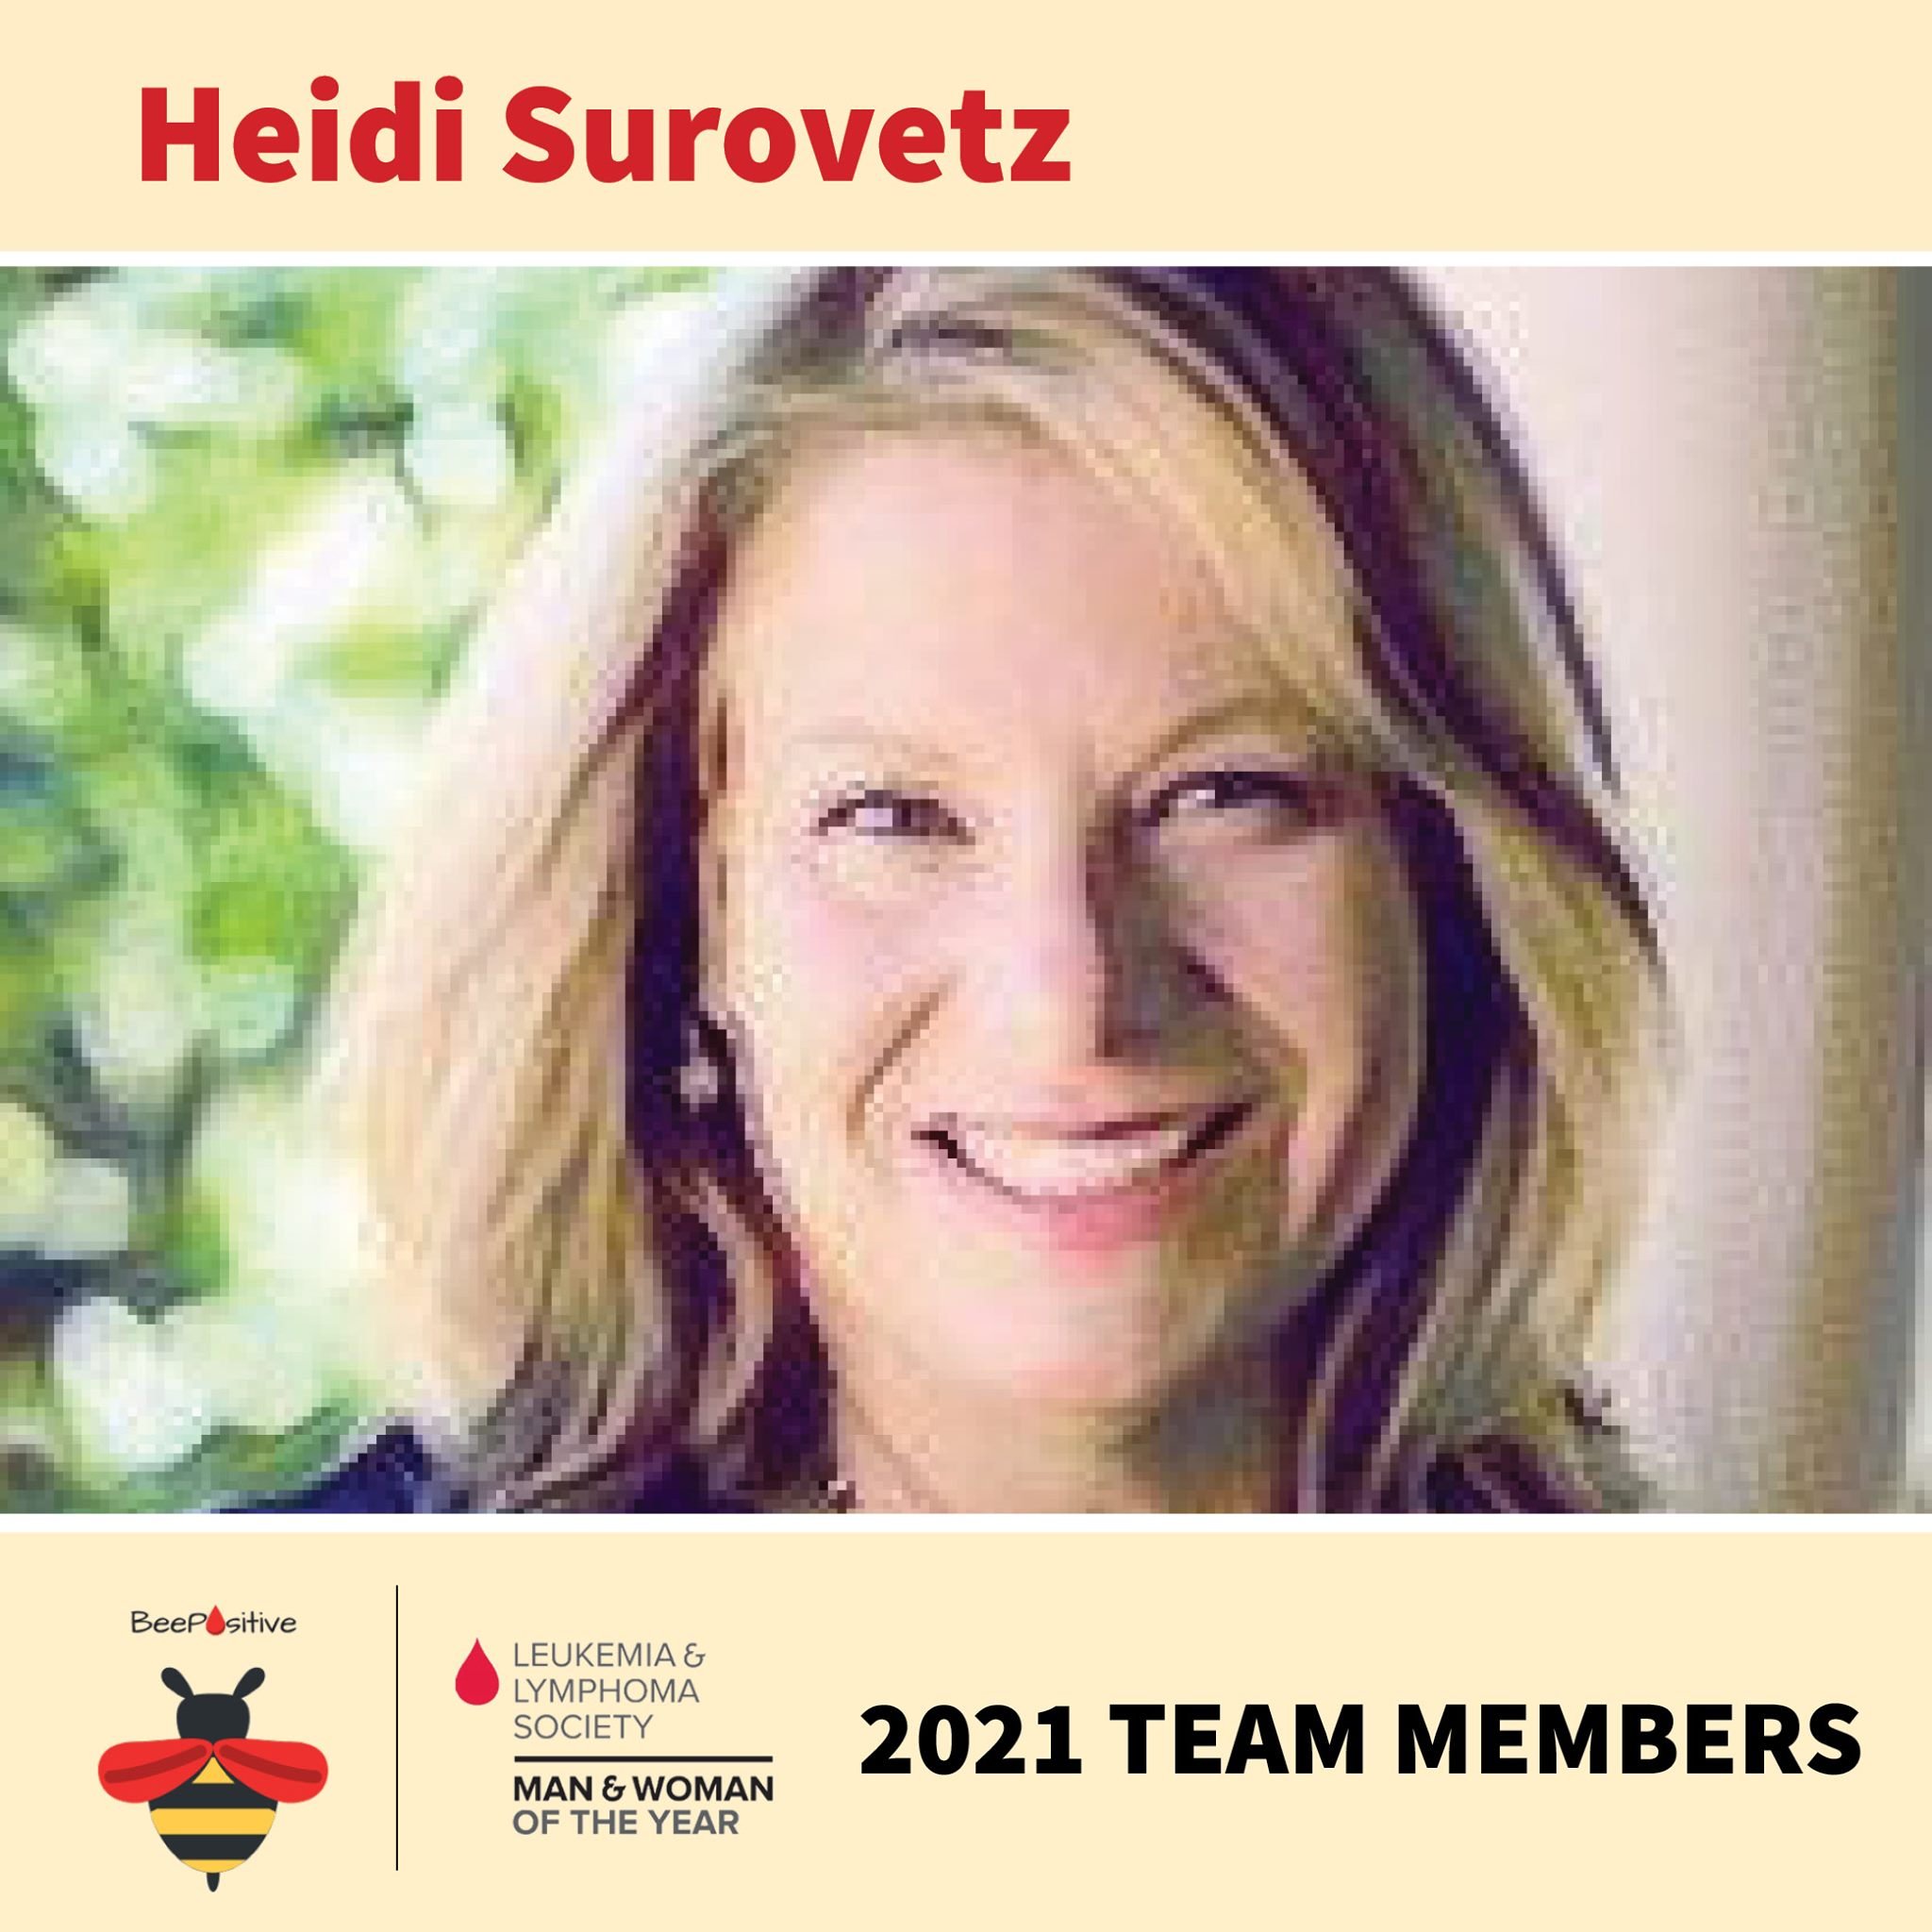 Team member announcement - Heidi Surovertz.jpg